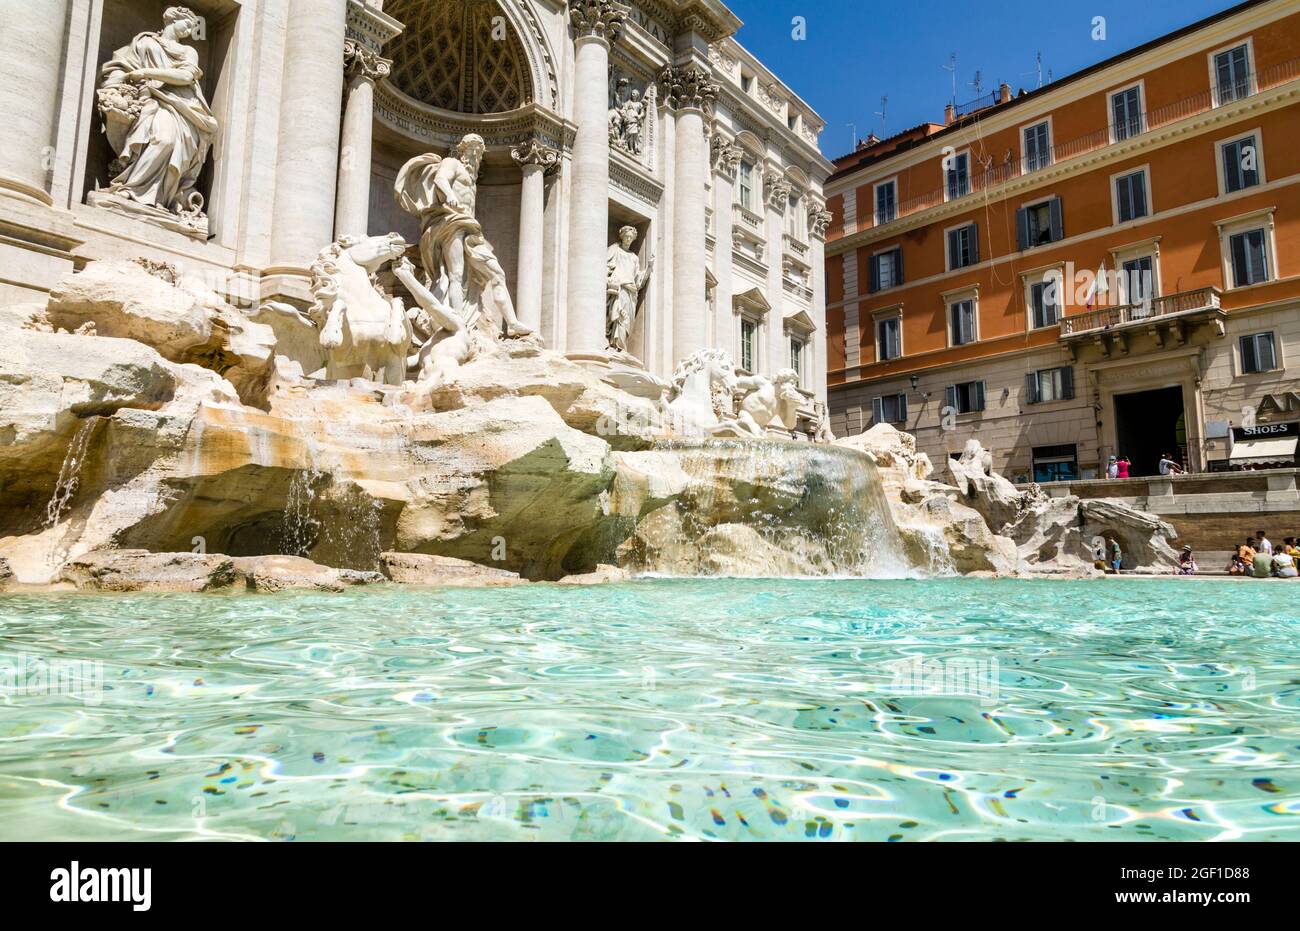 The Trevi Fountain, Rome, Italy Stock Photo